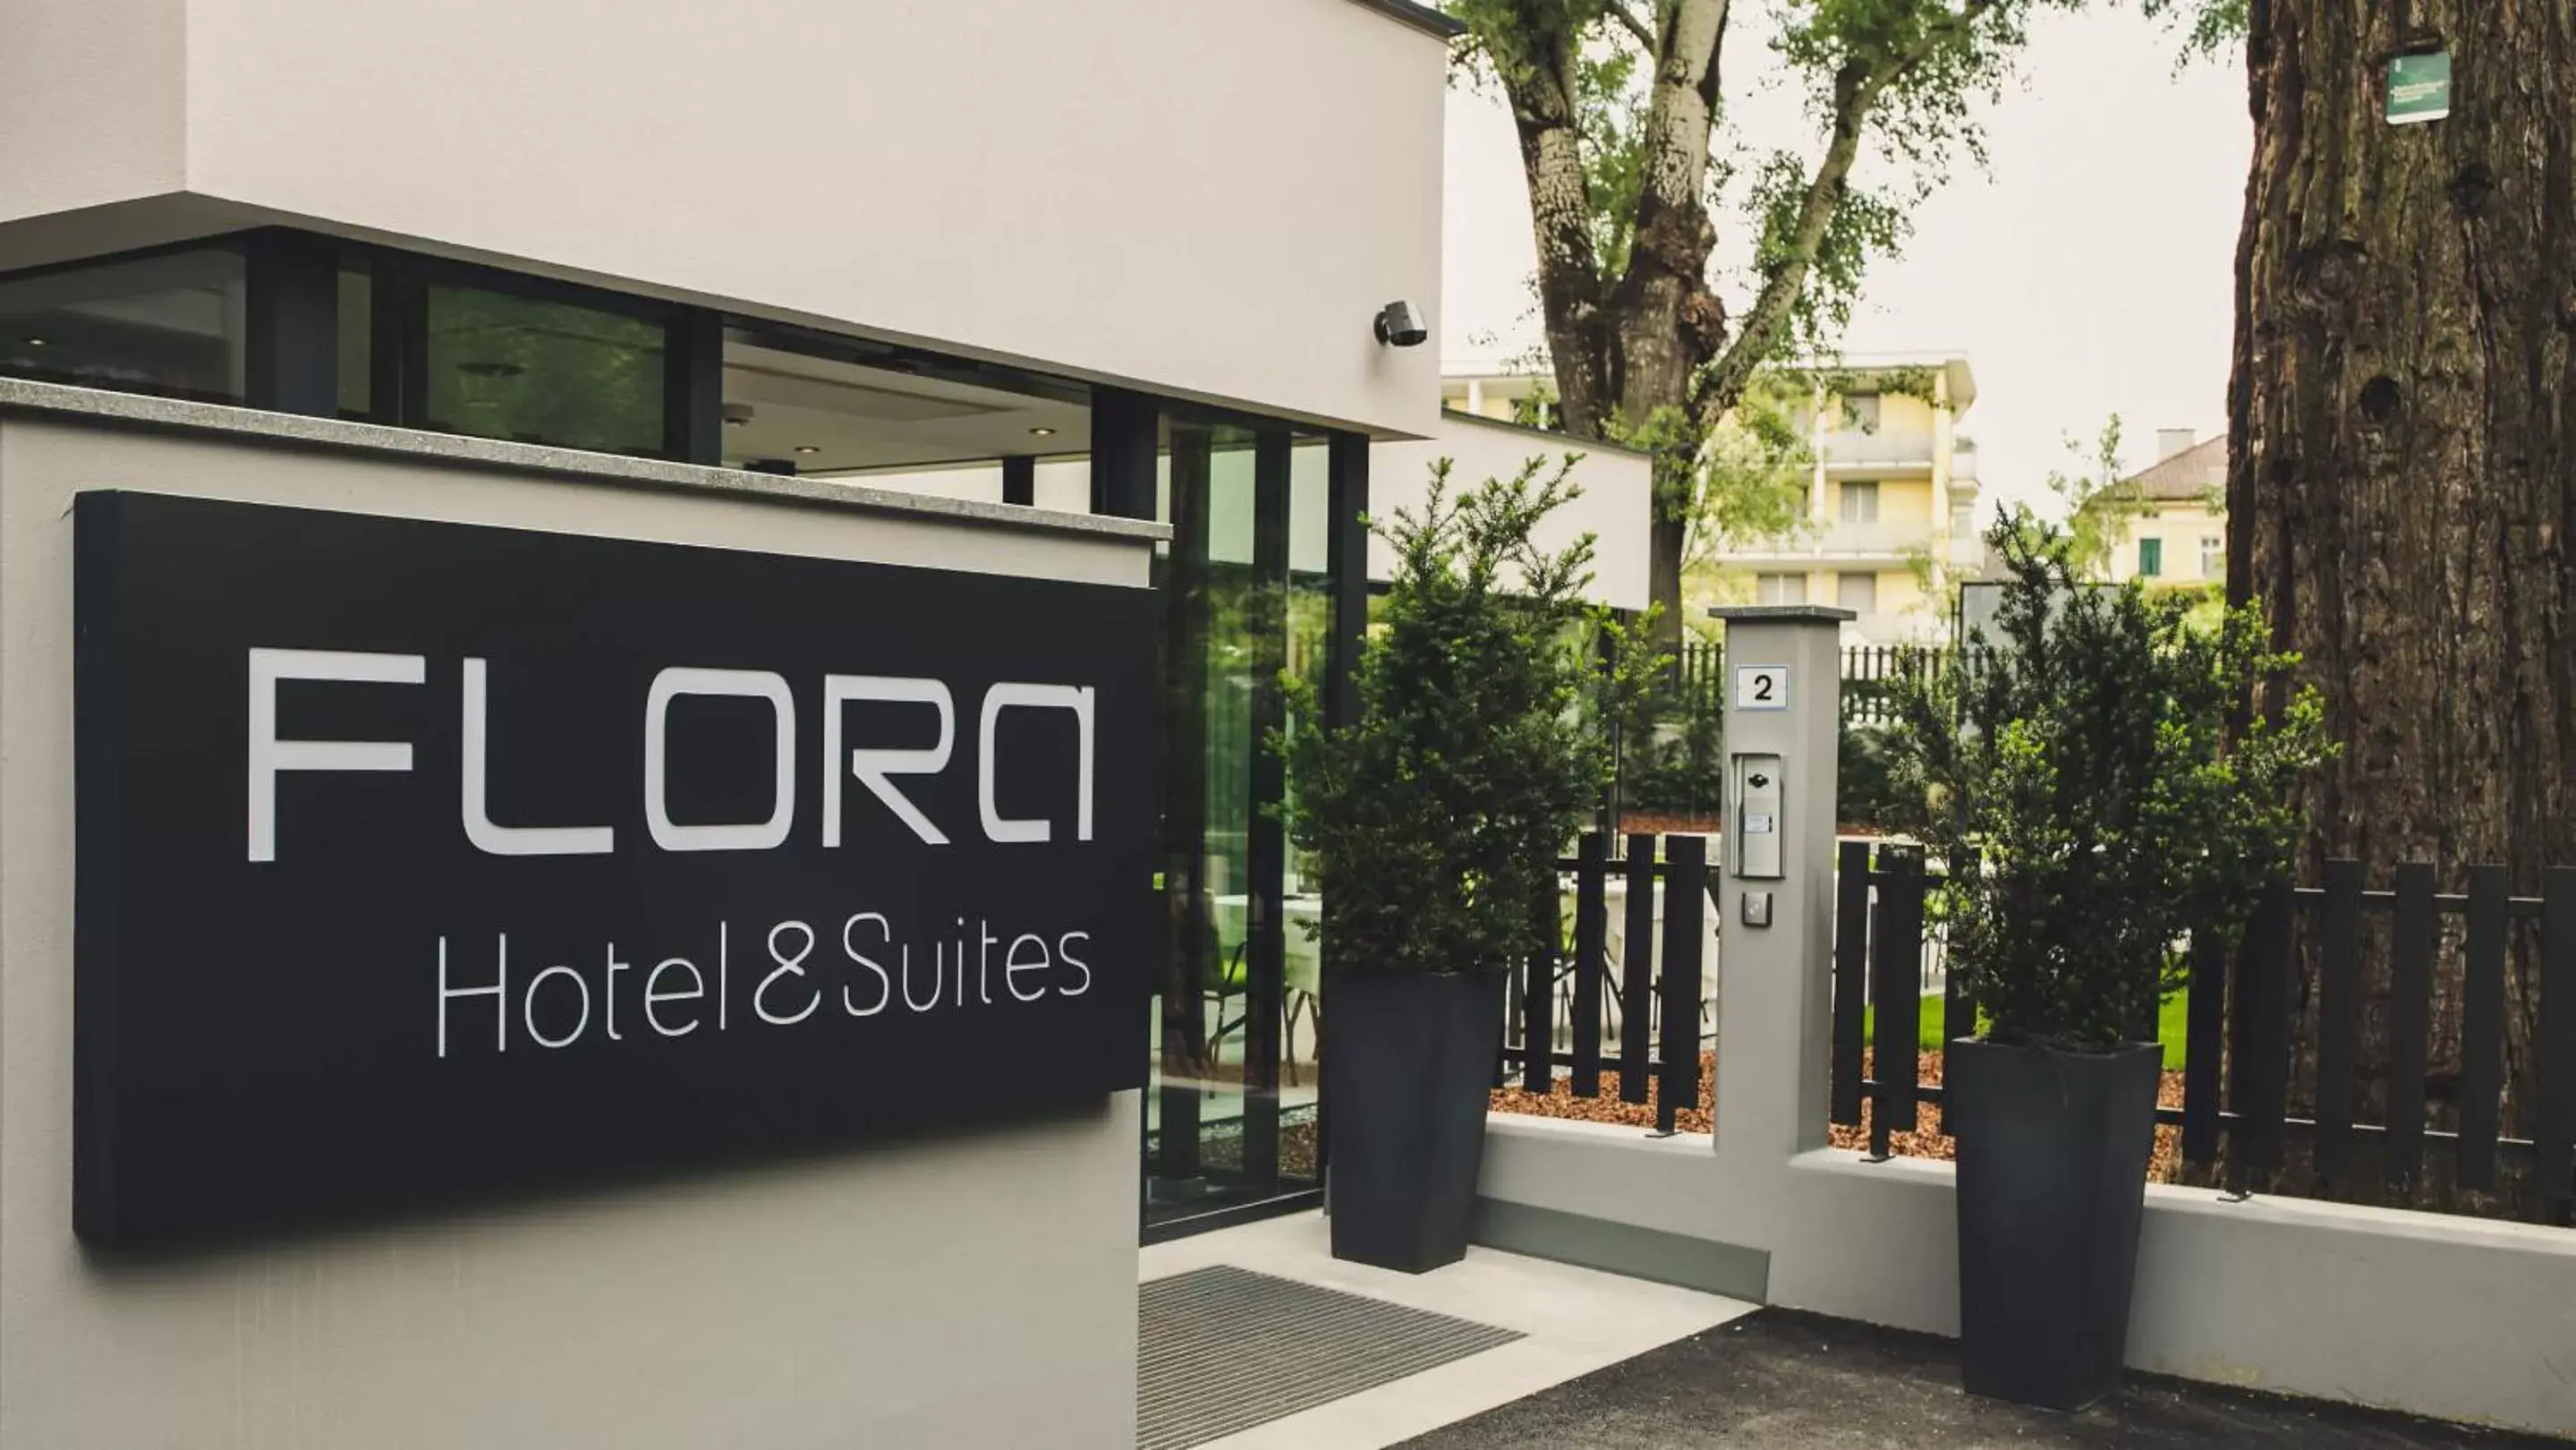 Facade/entrance in Flora Hotel & Suites